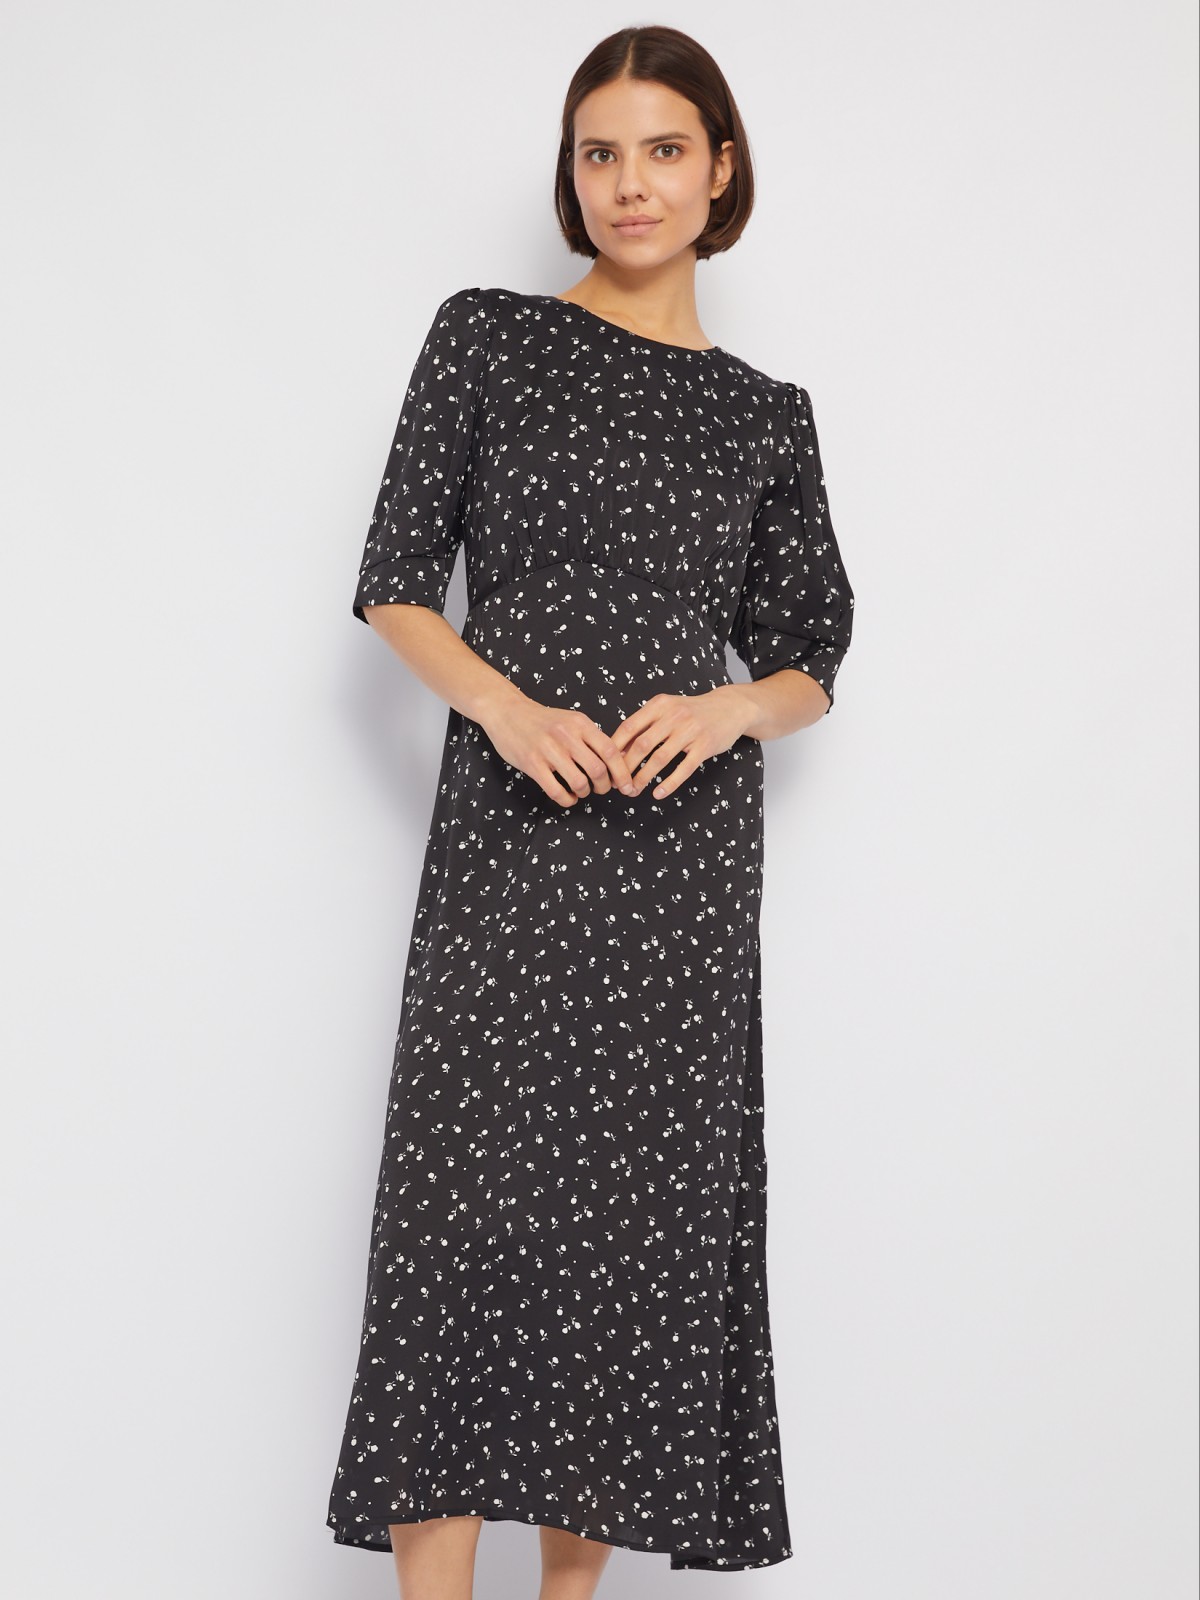 Атласное платье длины миди с принтом и высокой талией zolla 024138208121, цвет черный, размер XS